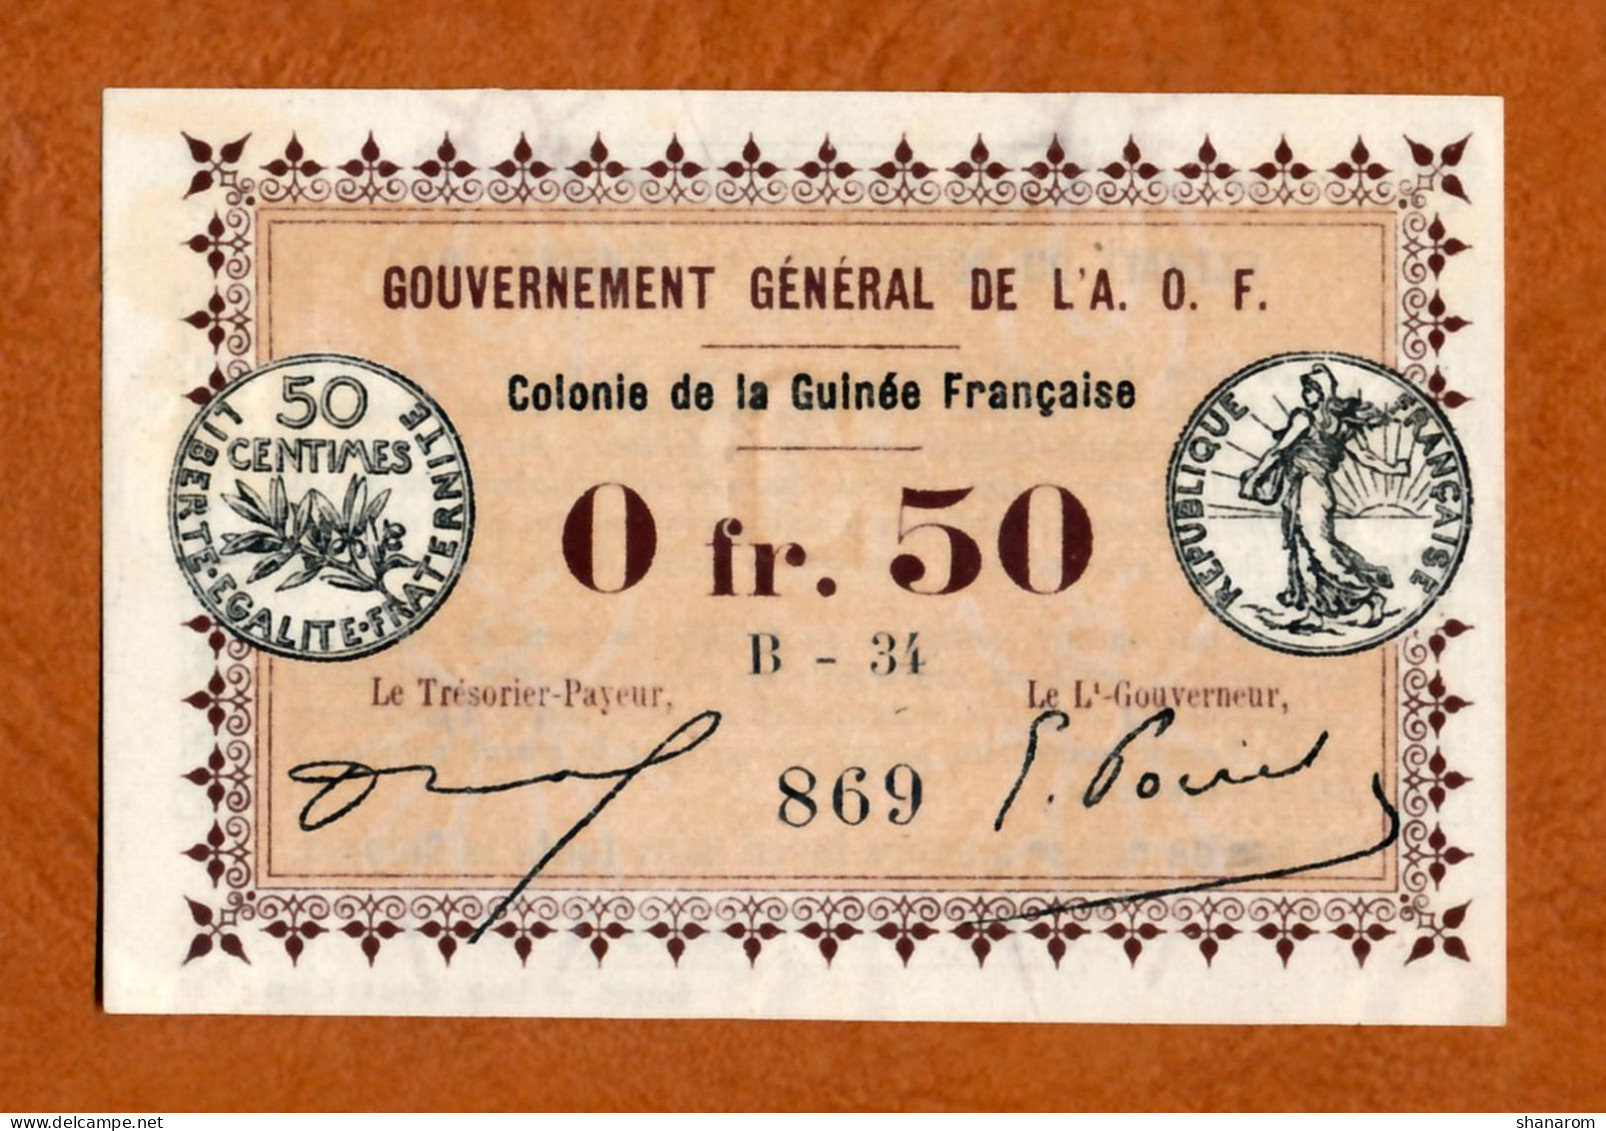 1917 // COLONIE DE LA GUINEE FRANCAISE // A.O.F. // Bon De Cinquante Centimes // Filigrane Abeilles // AU - SPL - Bons & Nécessité